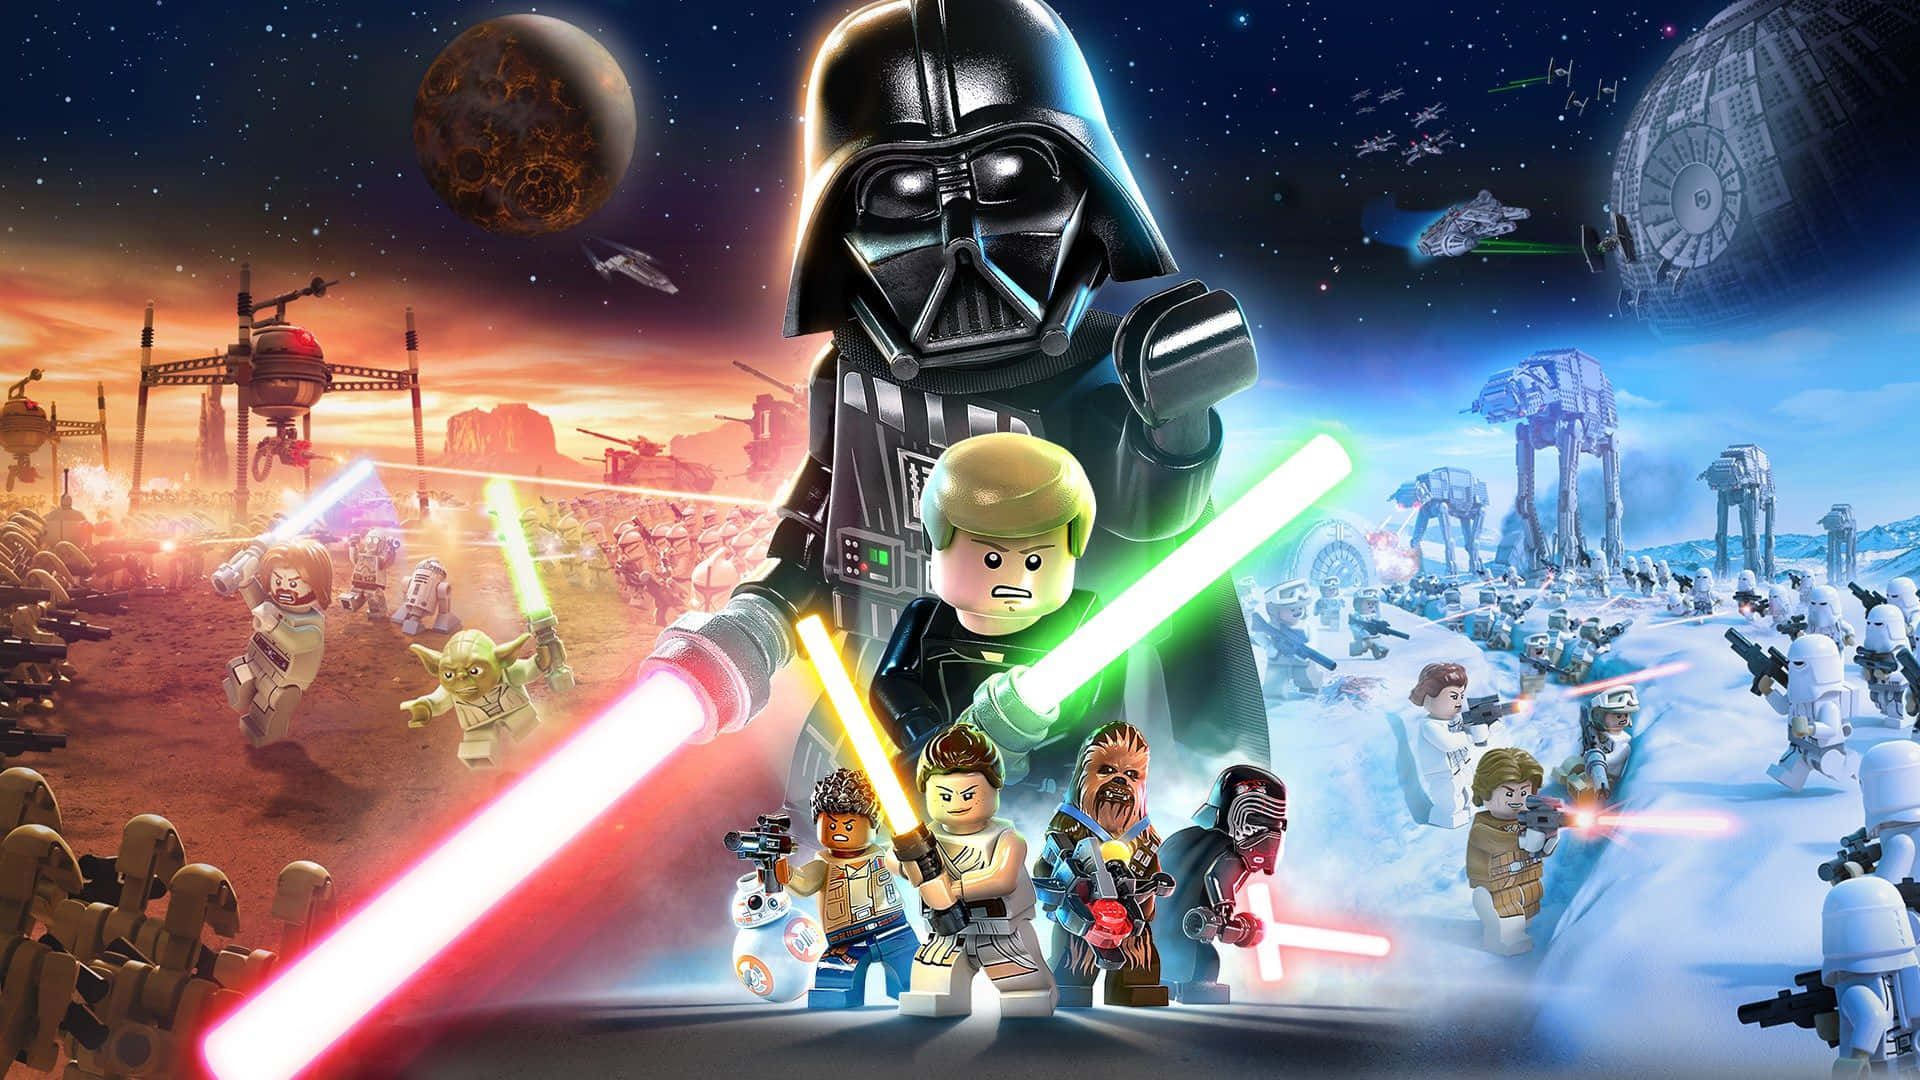 Lego Star Wars Billeder